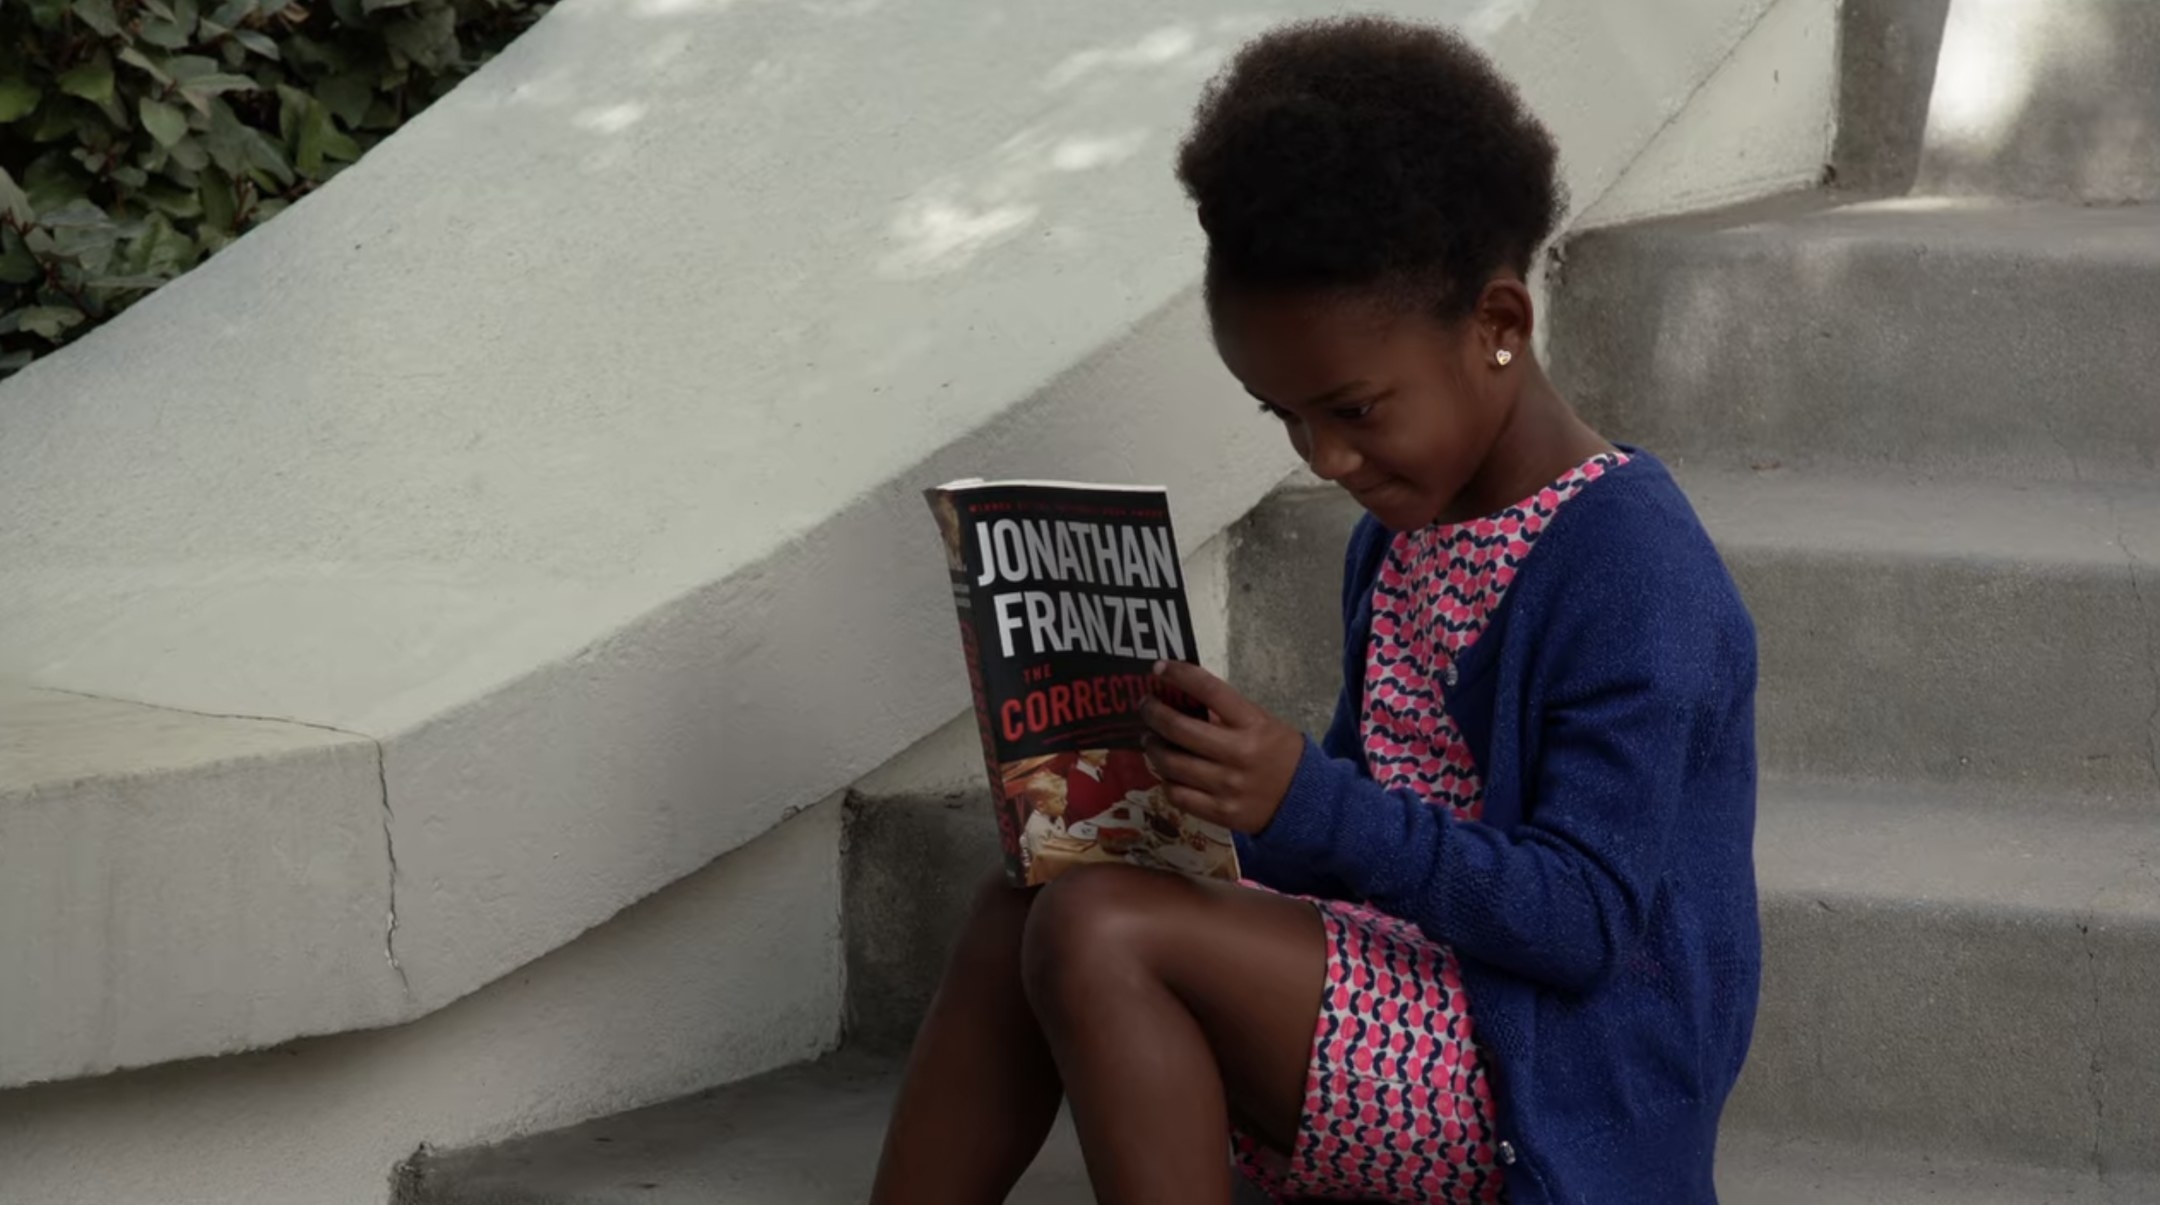 We see a little girl reading a Jonathan Franzen novel